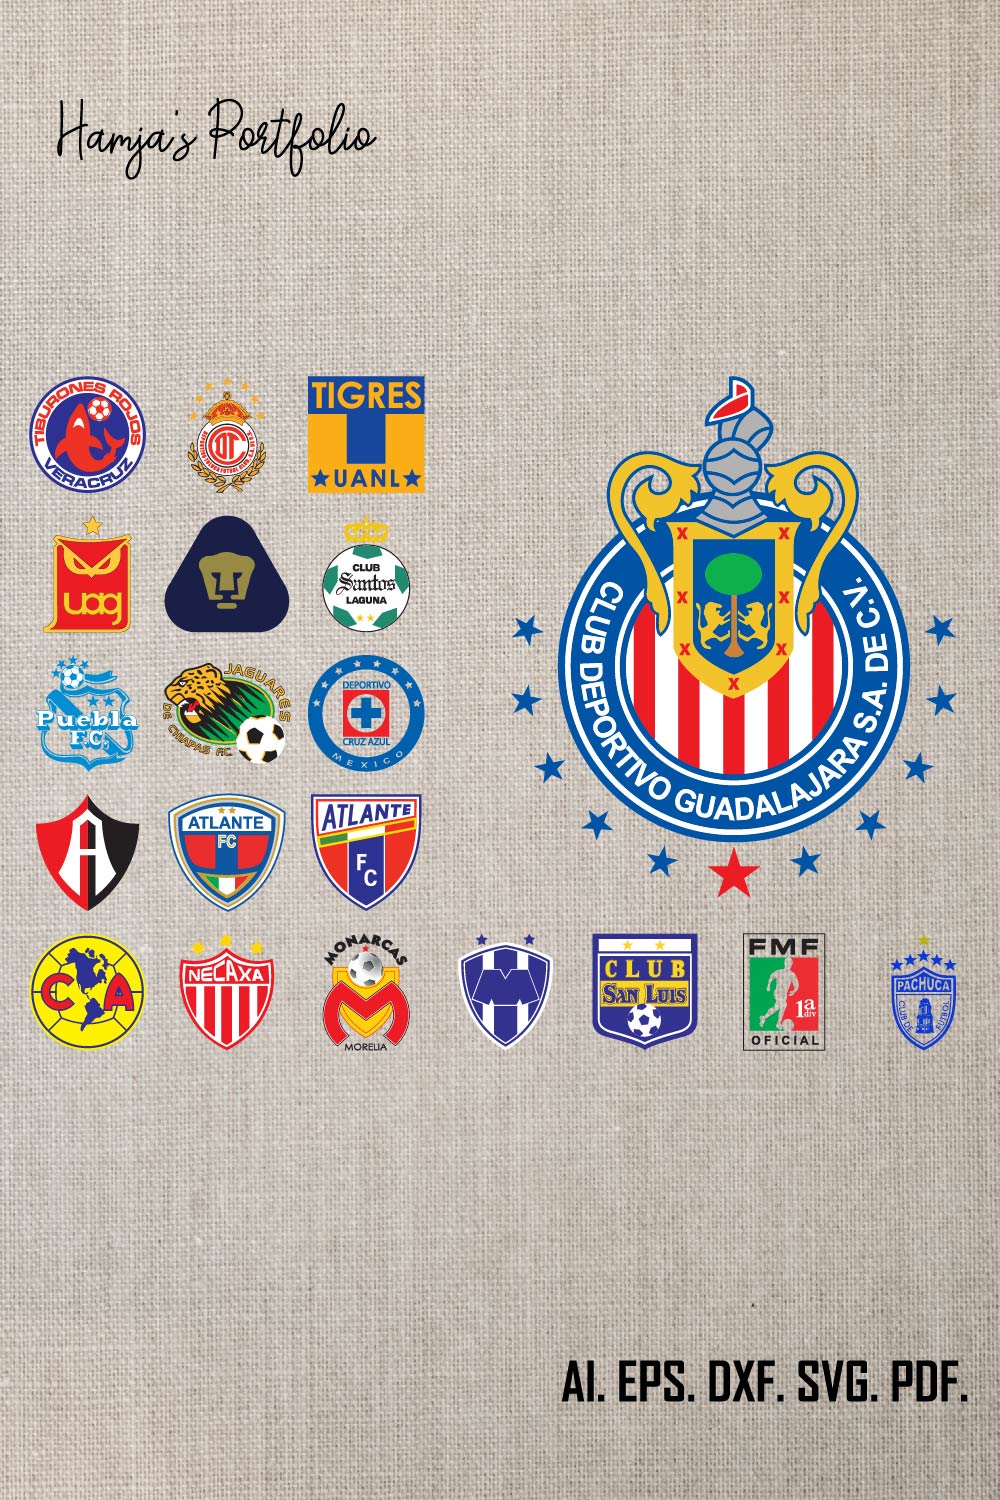 Mexican Football Team Logo, Mexican Football Soccer Teams logo, Sport vector logo design set pinterest preview image.